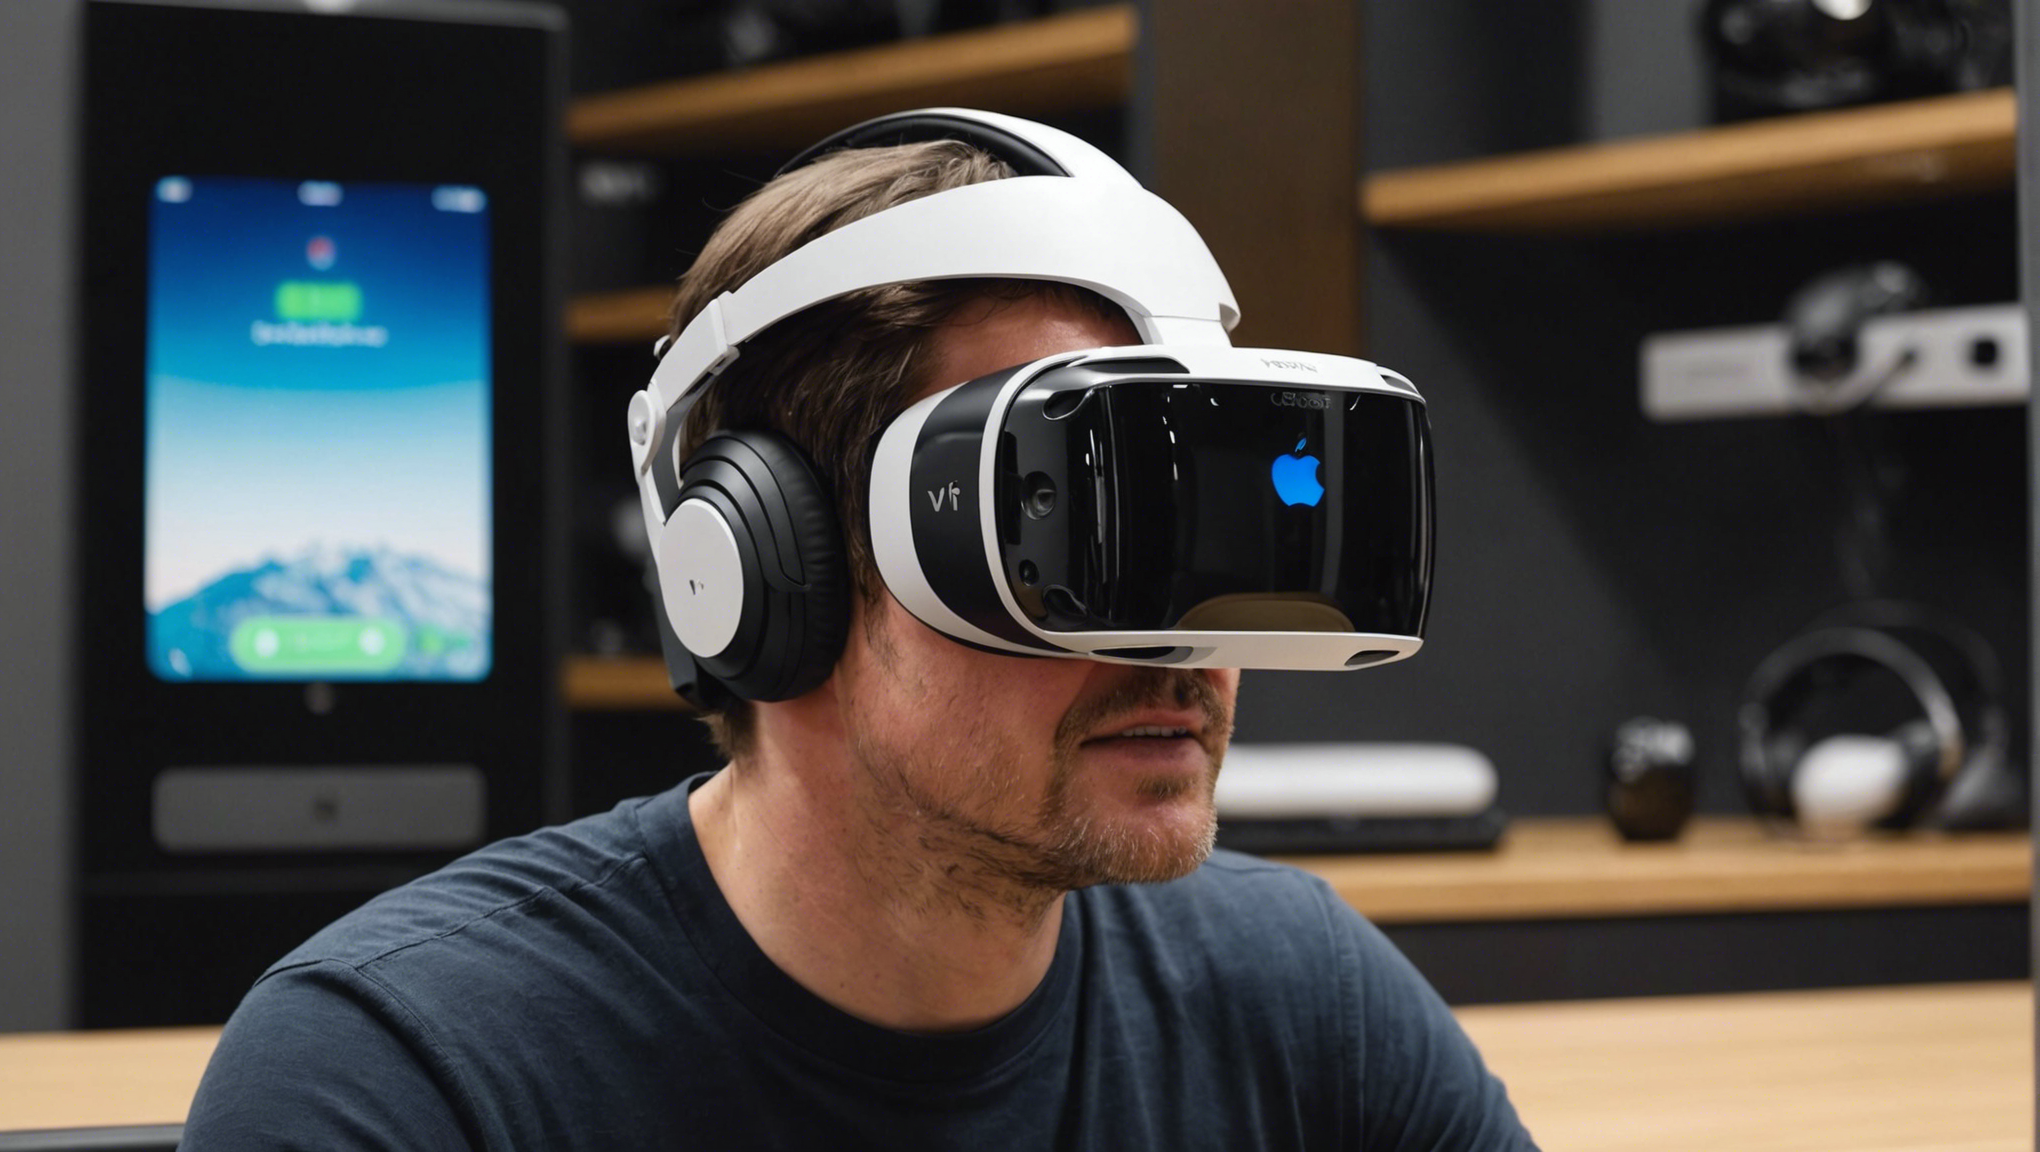 découvrez le prix du casque vr apple et plongez dans une expérience de réalité virtuelle immersive. trouvez le meilleur tarif pour profiter de la technologie apple vr.